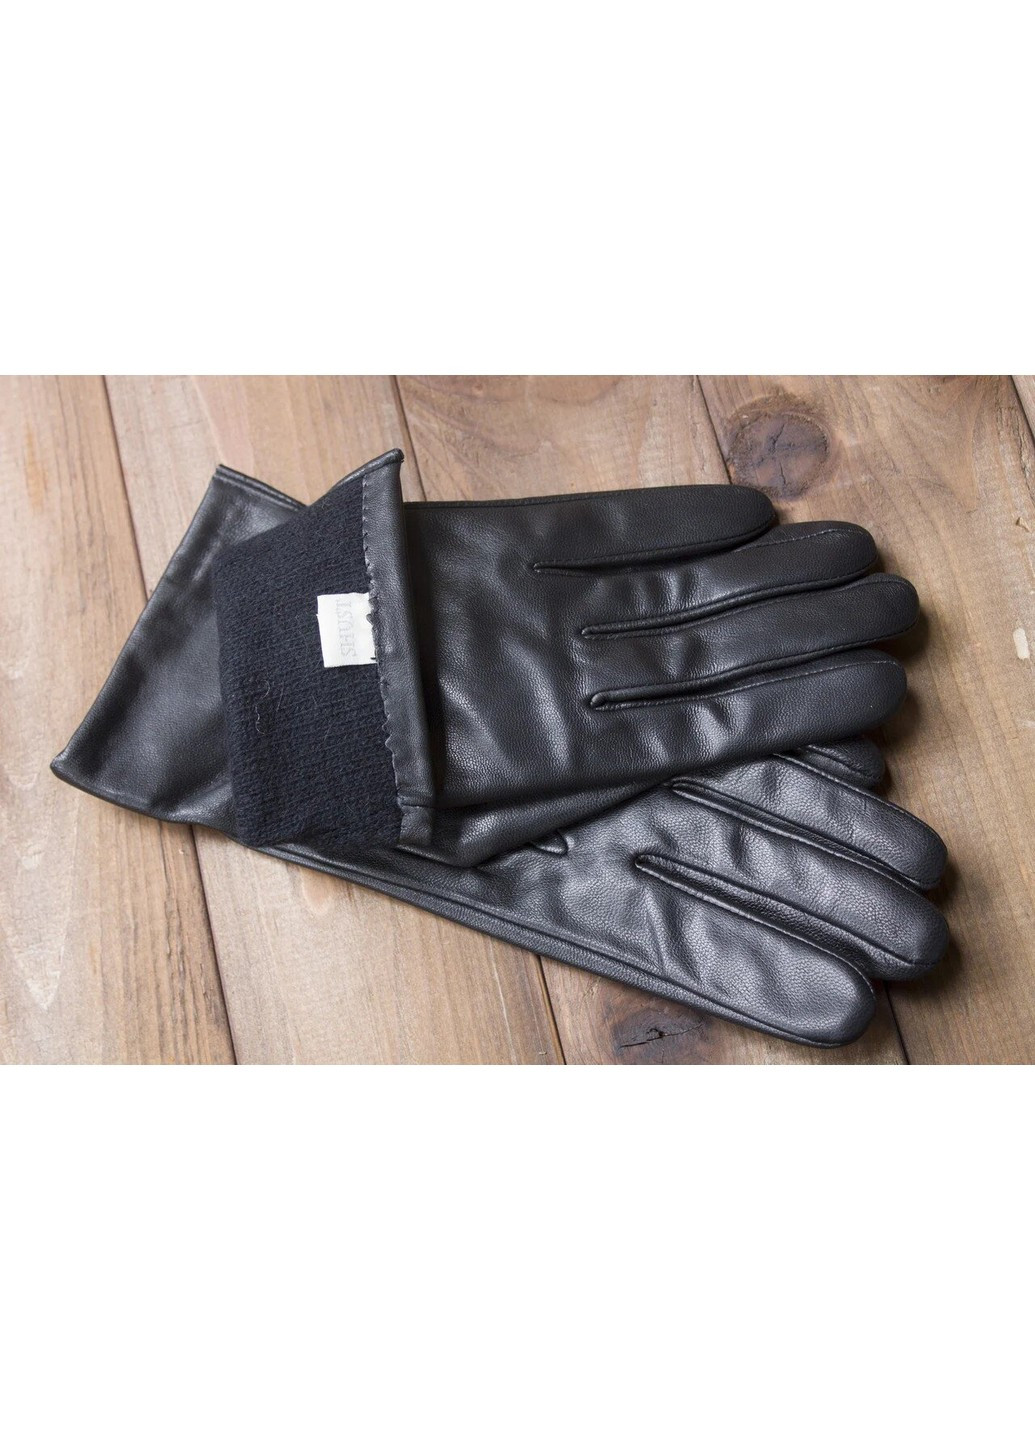 Перчатки женские чёрные кожаные сенсорные 946s2 M Shust Gloves (266143778)